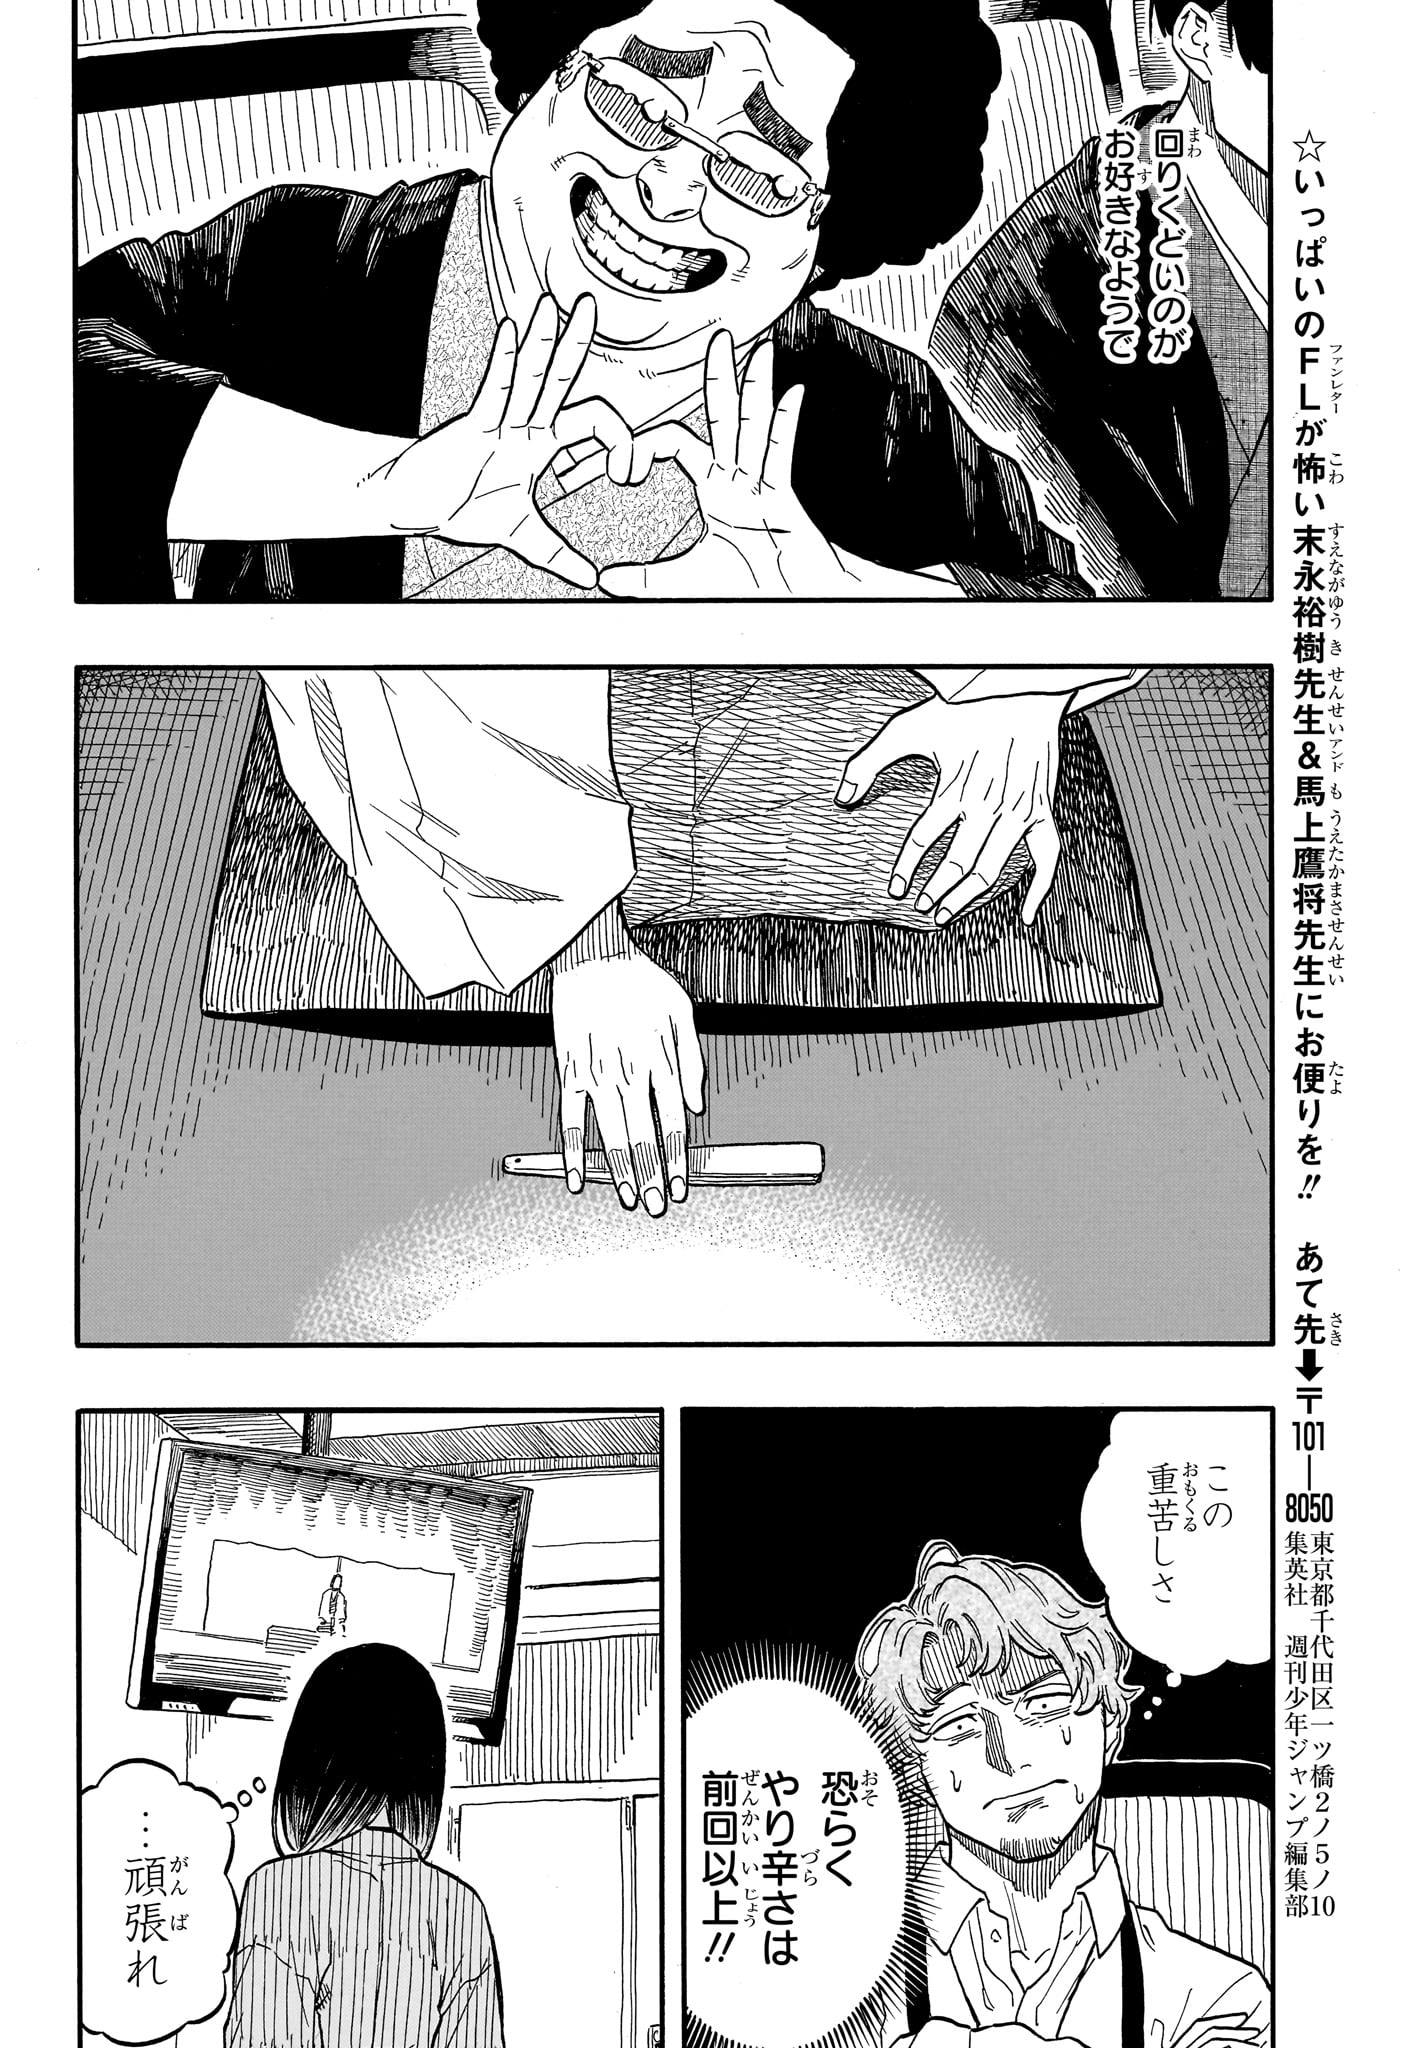 Akane-Banashi - Chapter 110 - Page 20